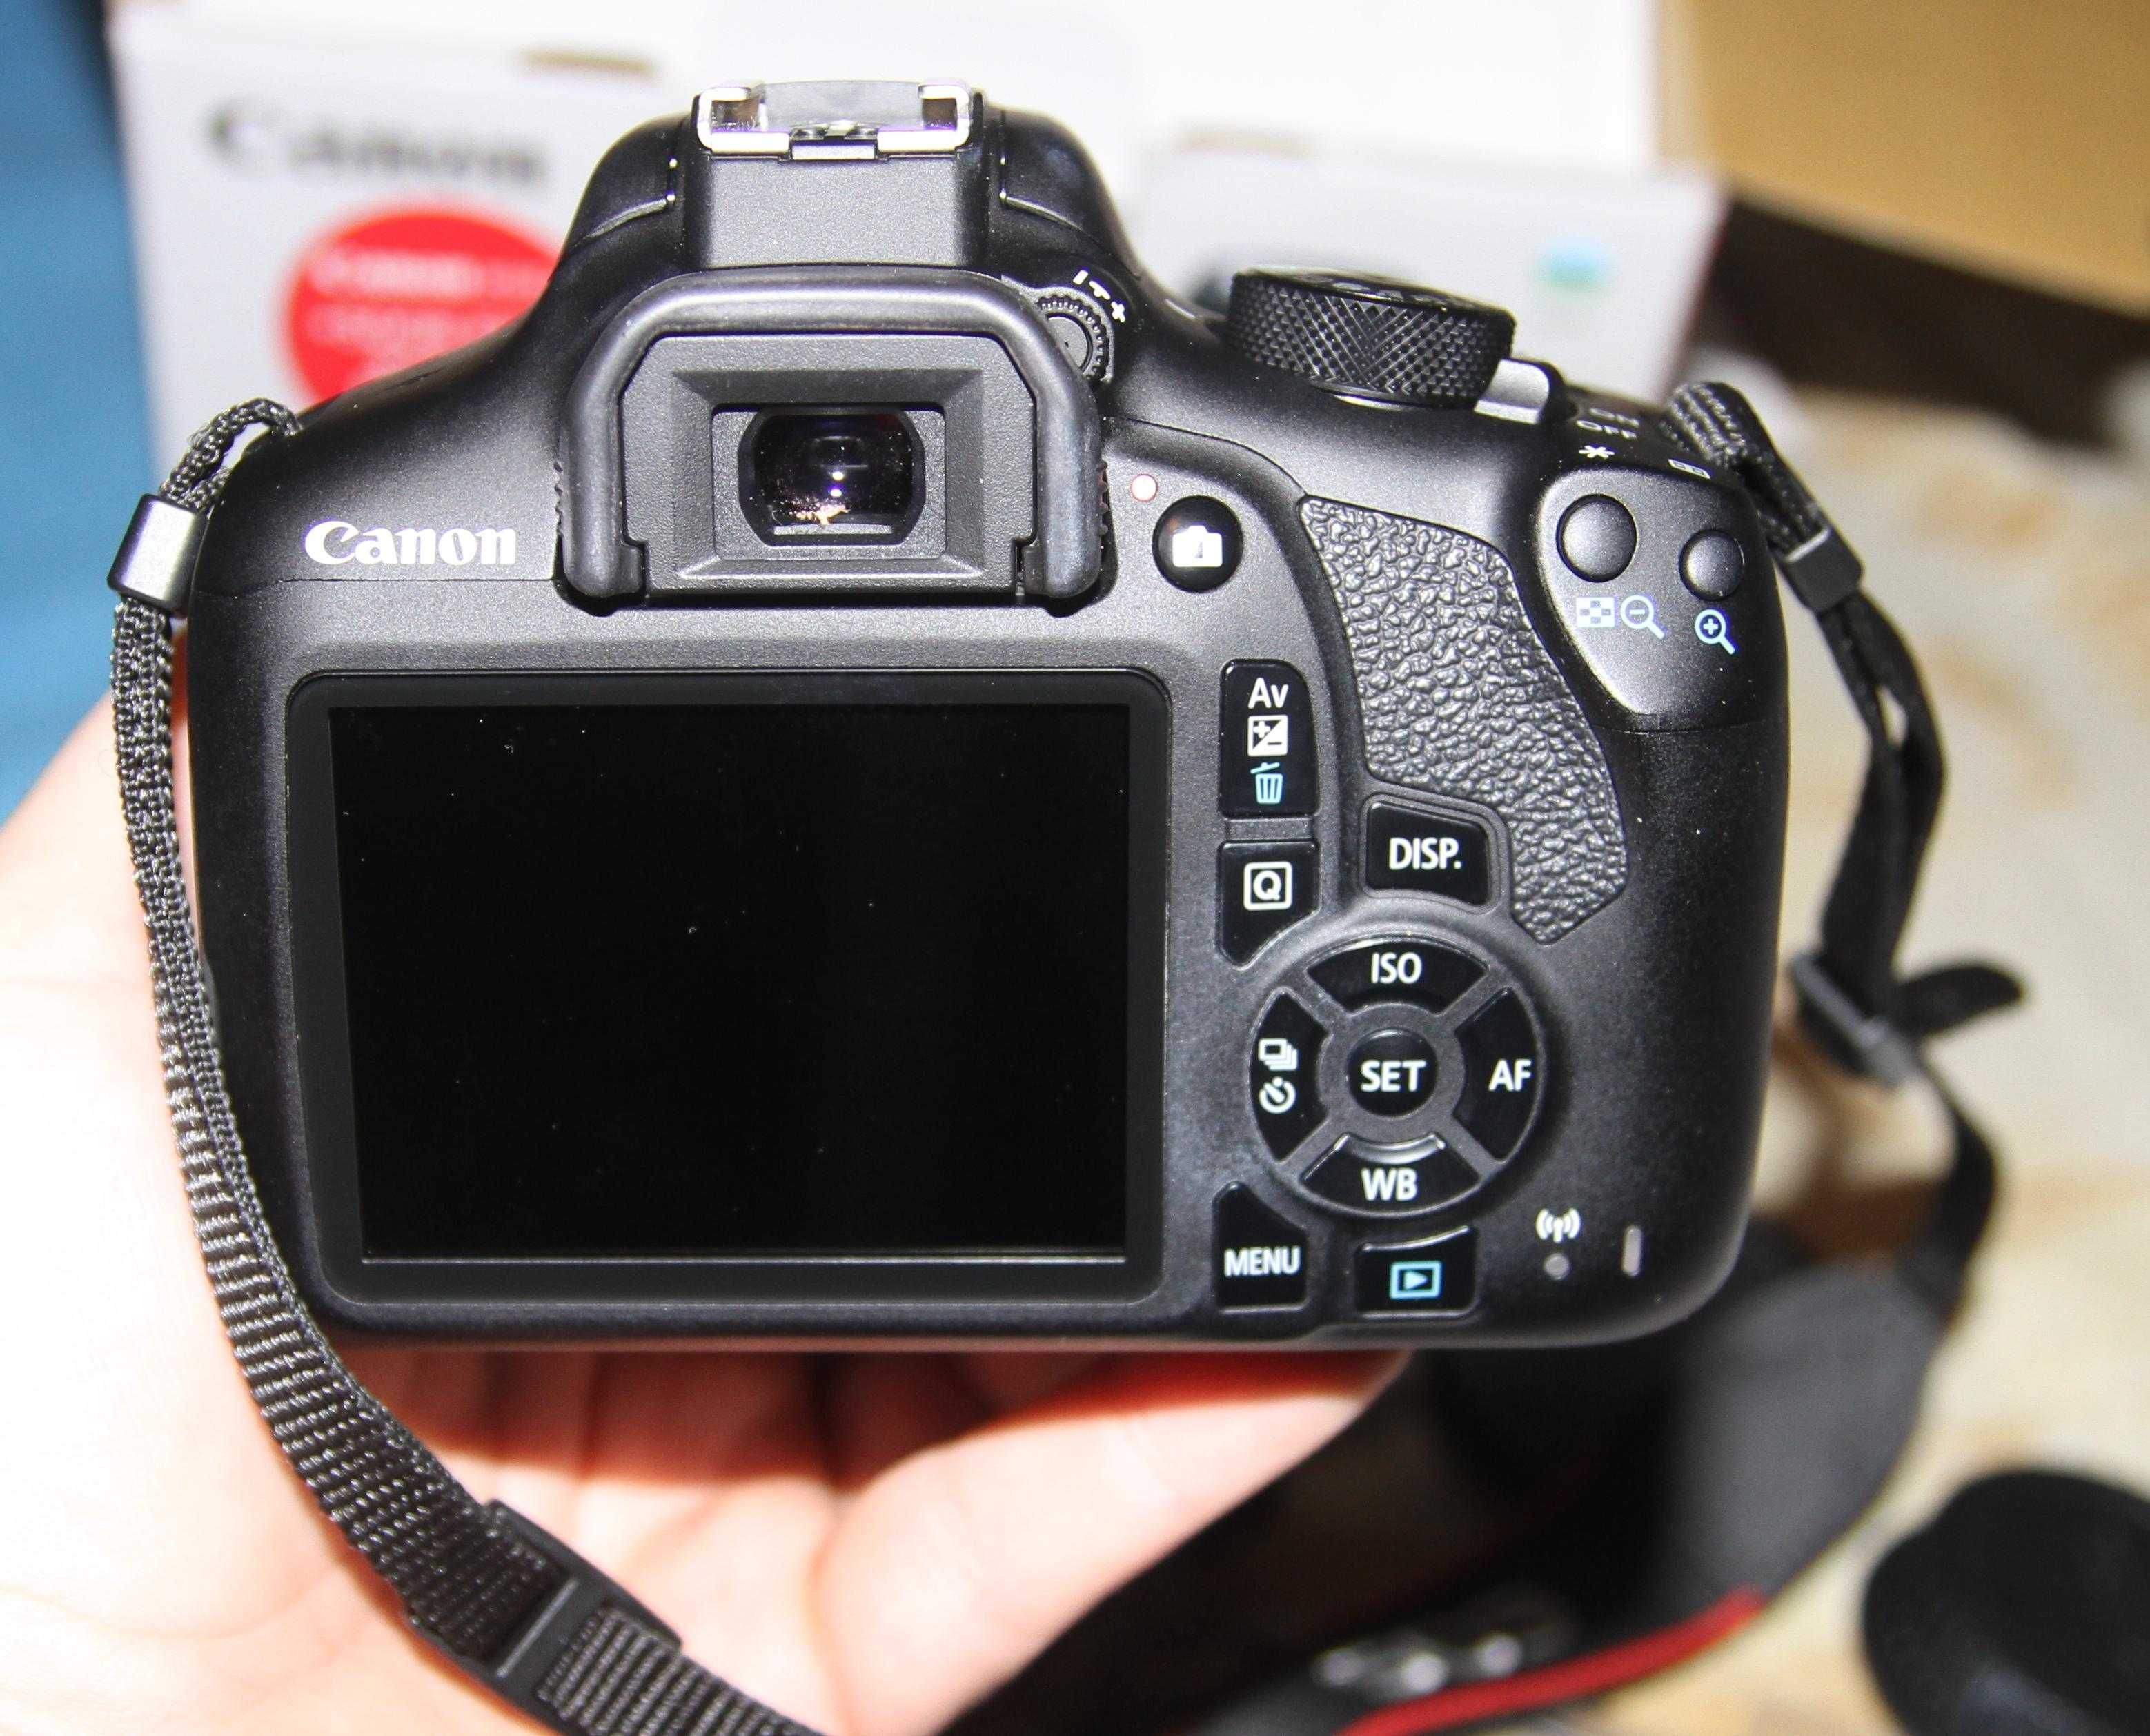 Lustrzanka Cyfrowa Canon 1300D + Obiektyw zestaw sklepowy.